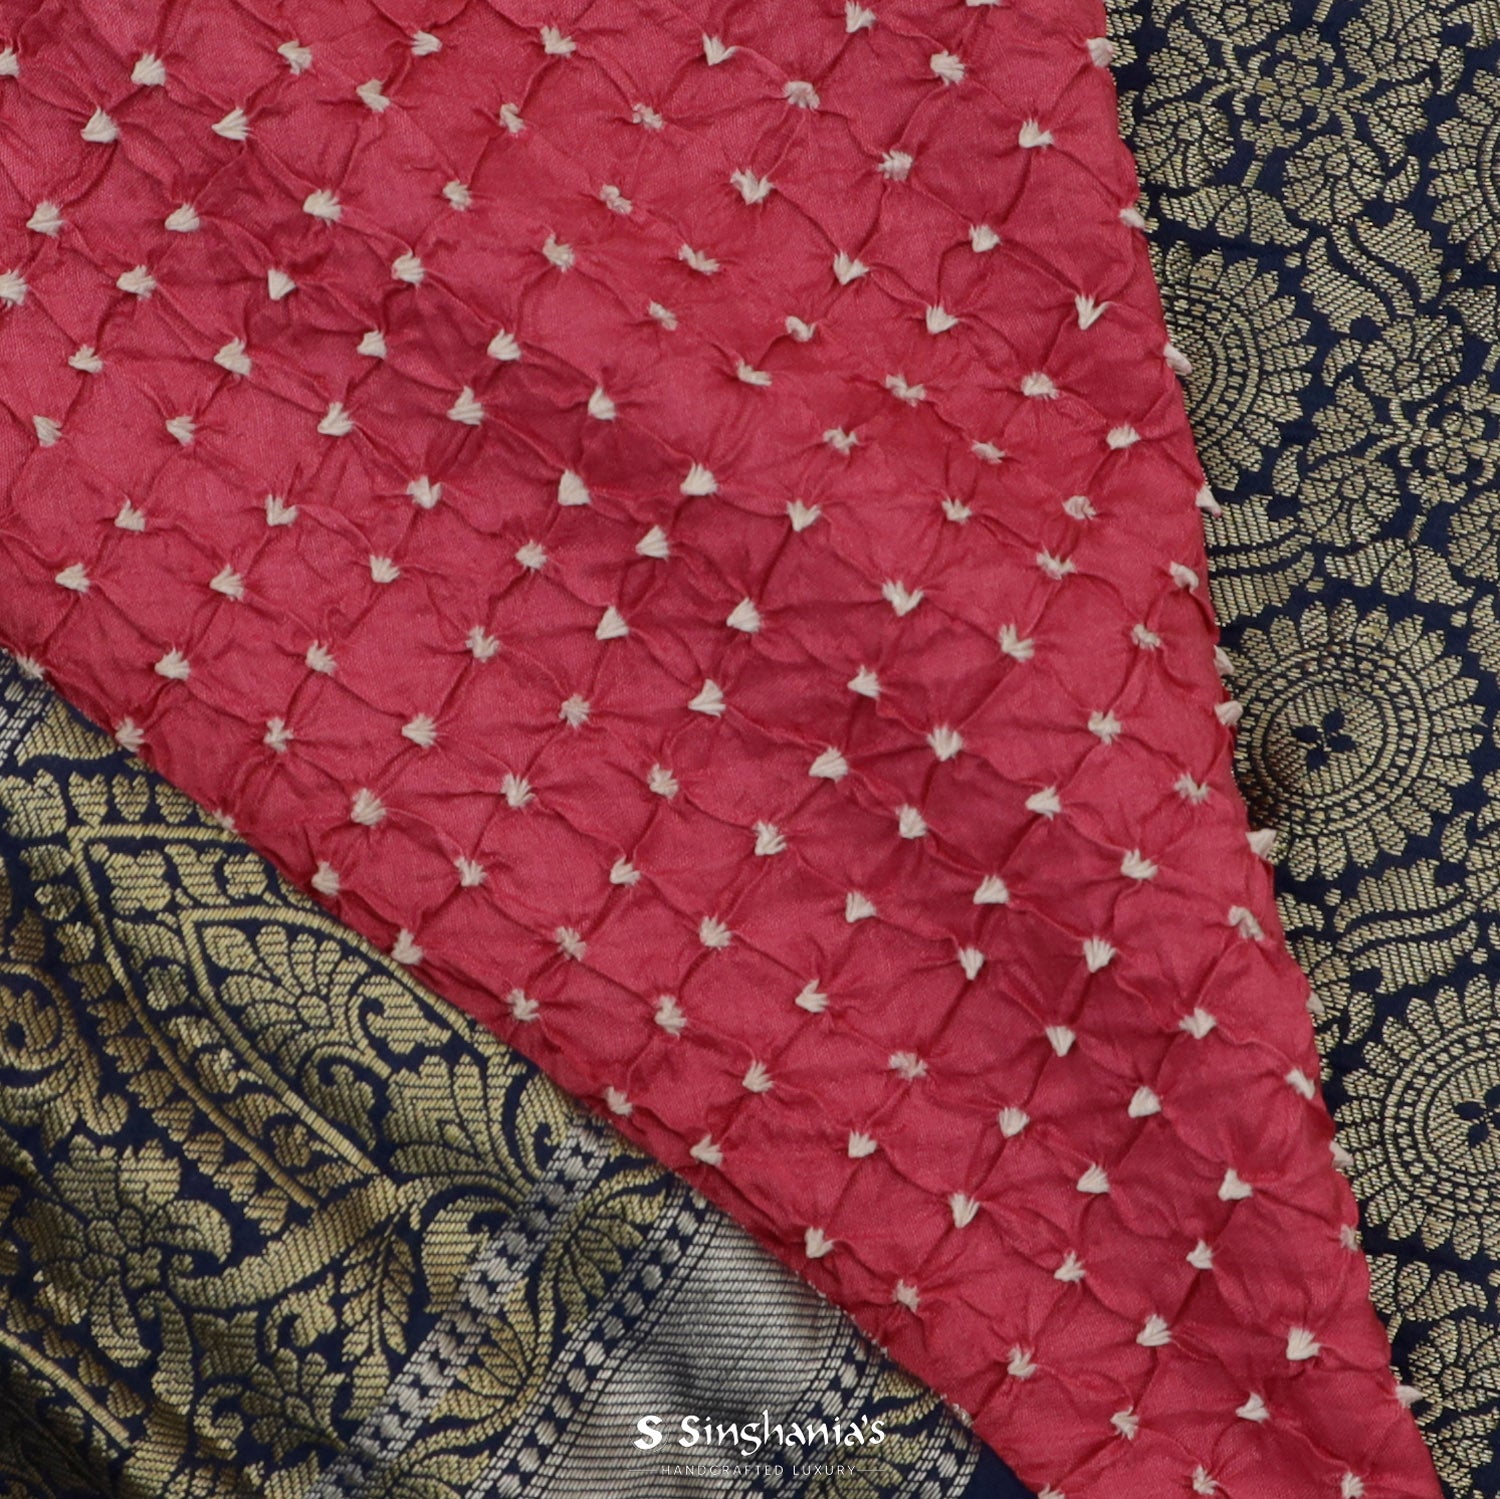 Milano Pink Printed Kanjivaram Saree With Bandhani Pattern